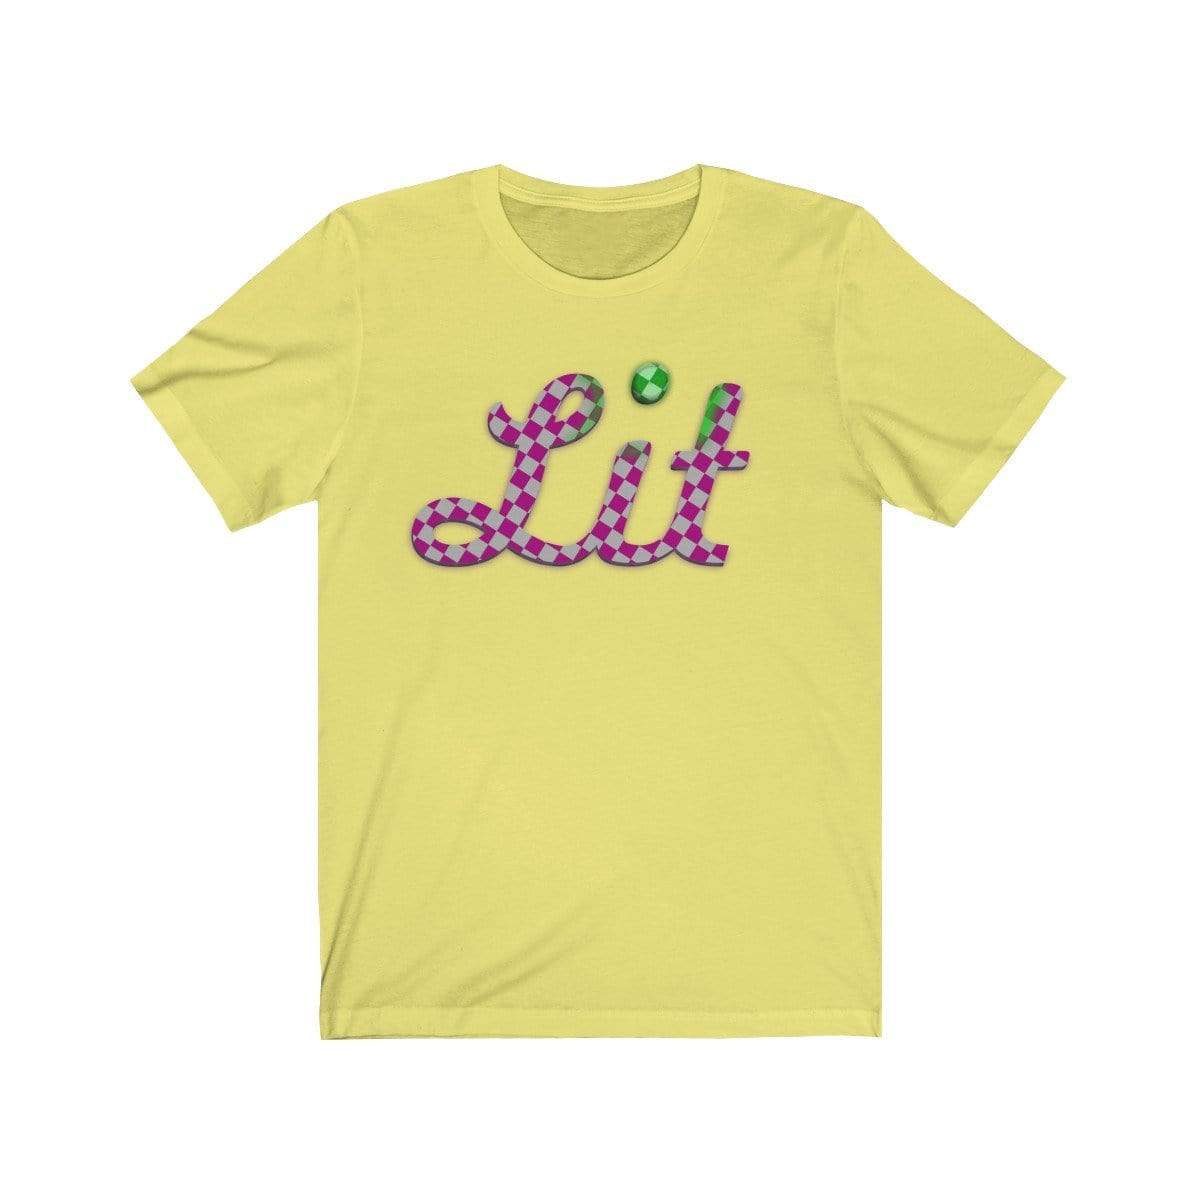 Plumskum T-Shirt Yellow / S Pink Checkered Lit T-shirt